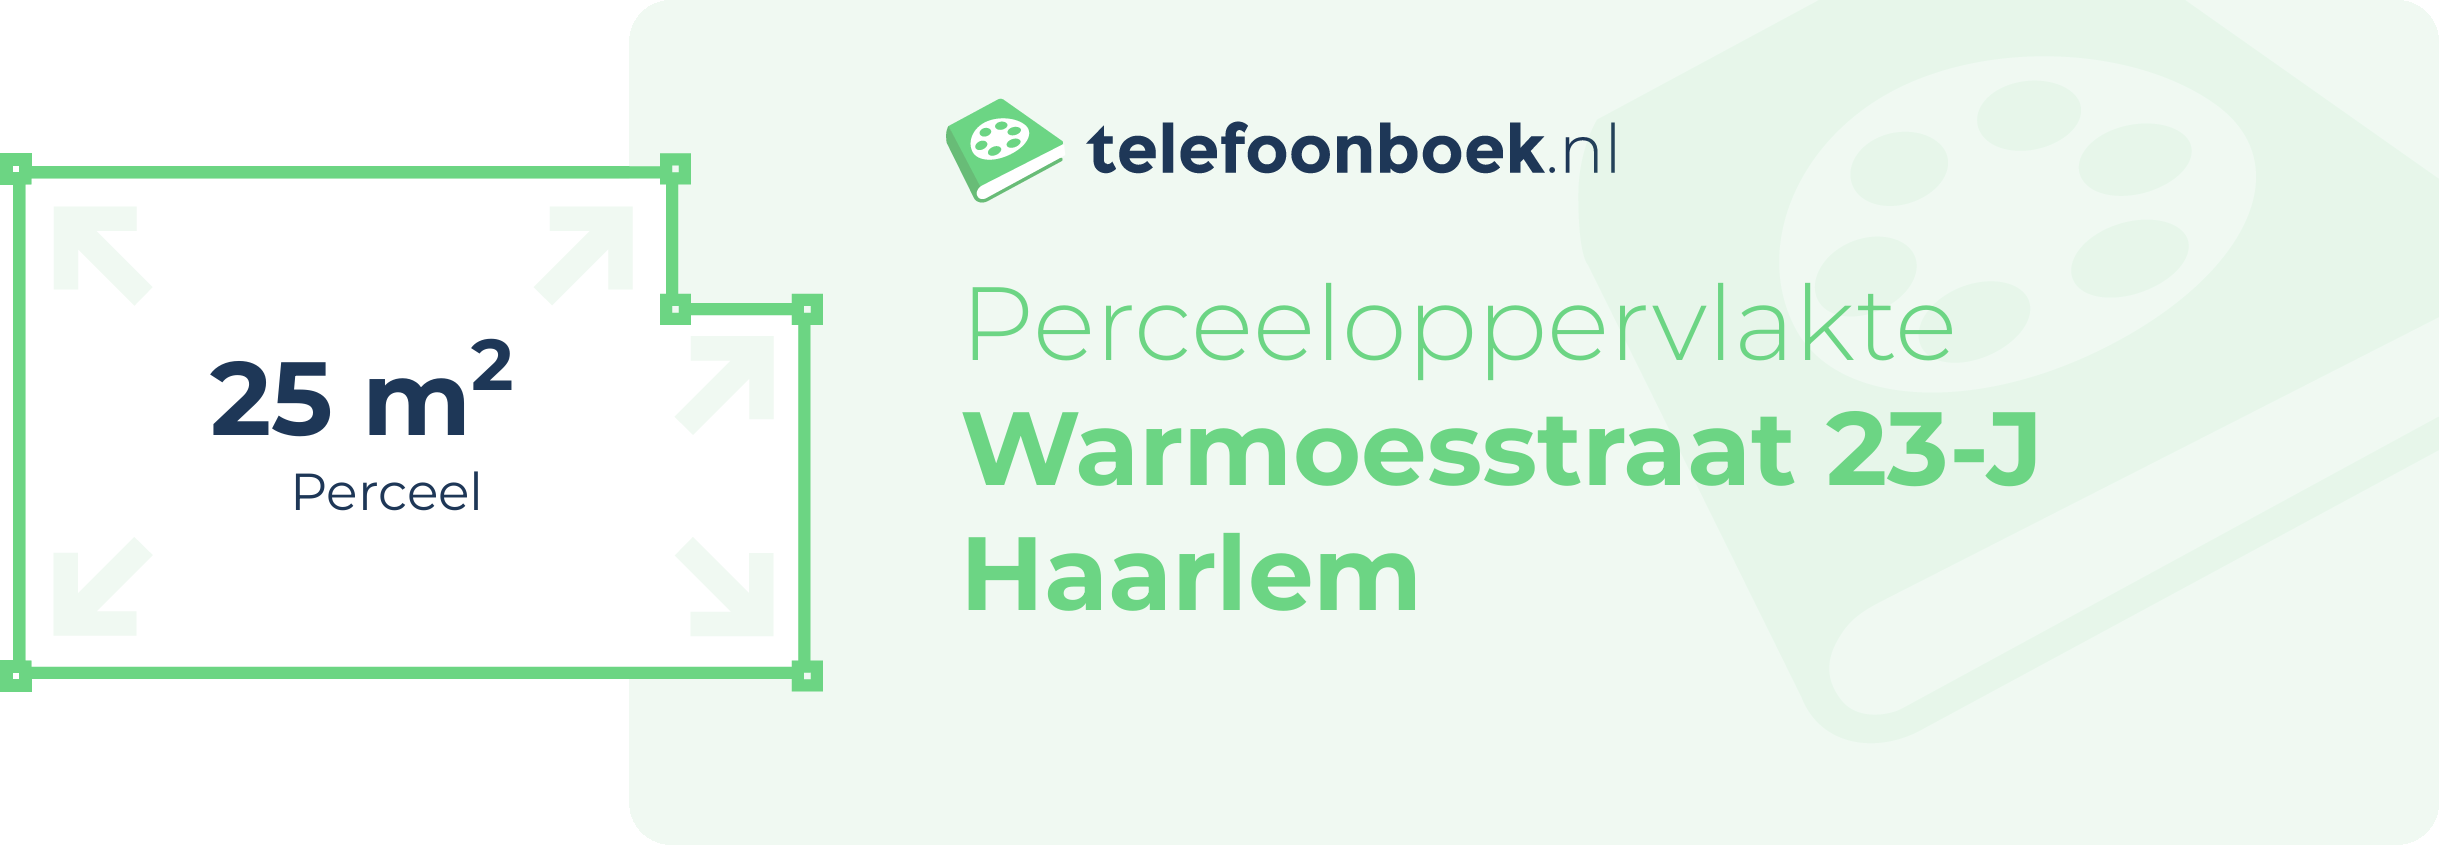 Perceeloppervlakte Warmoesstraat 23-J Haarlem